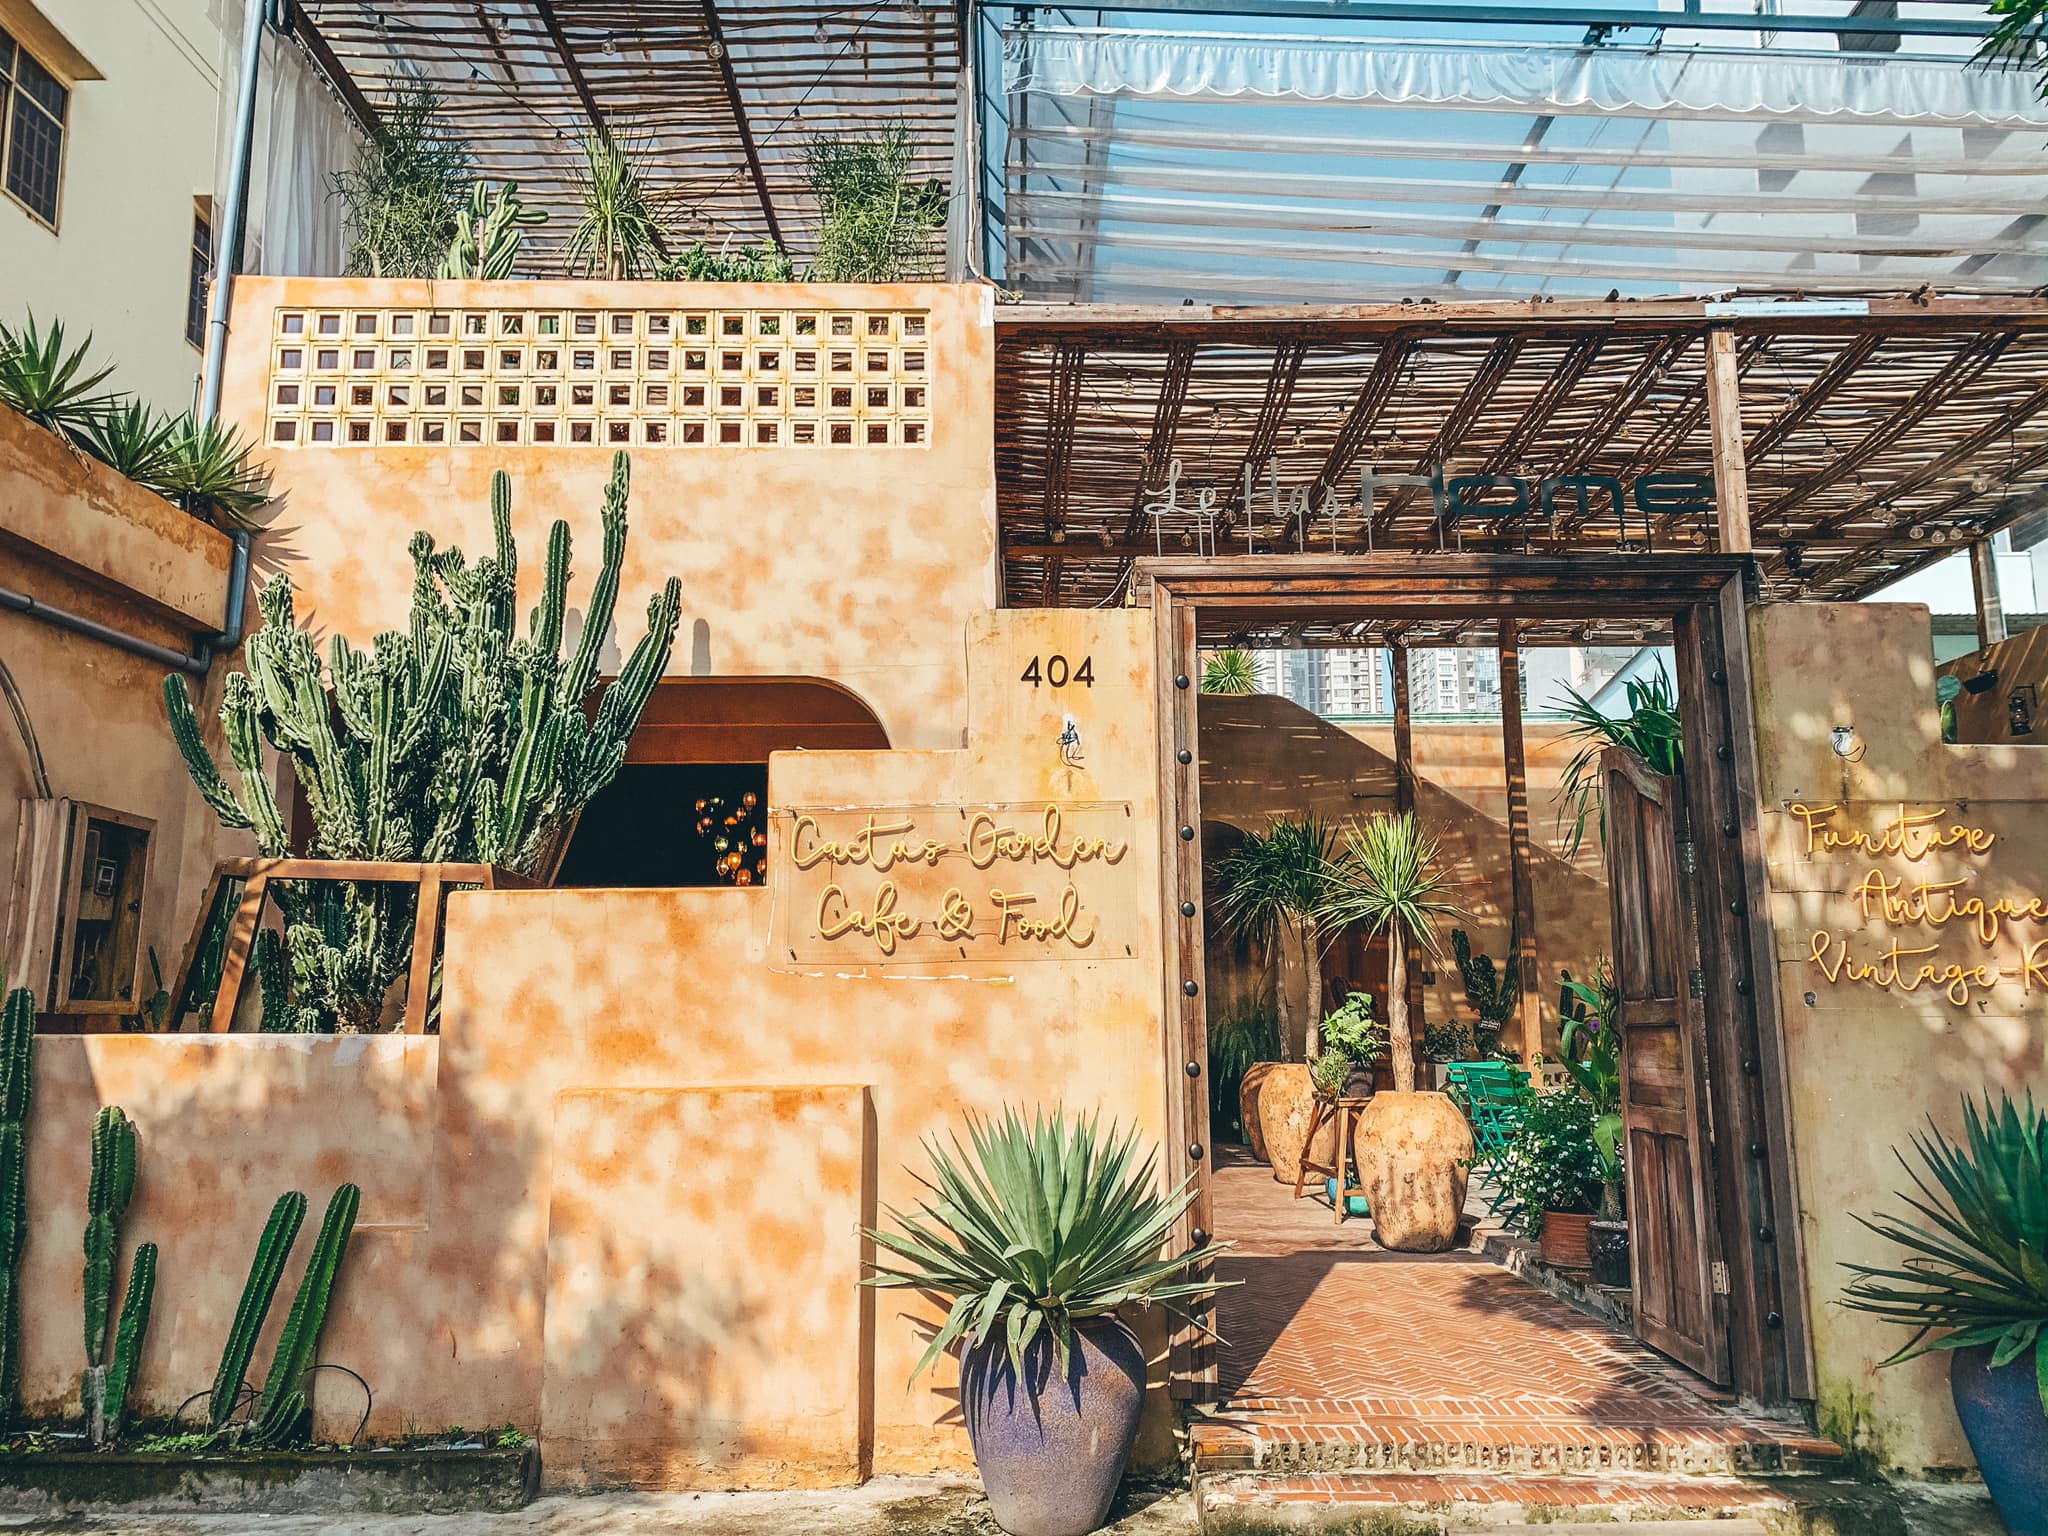 Leha's Home Cactus Garden Cafe & Food